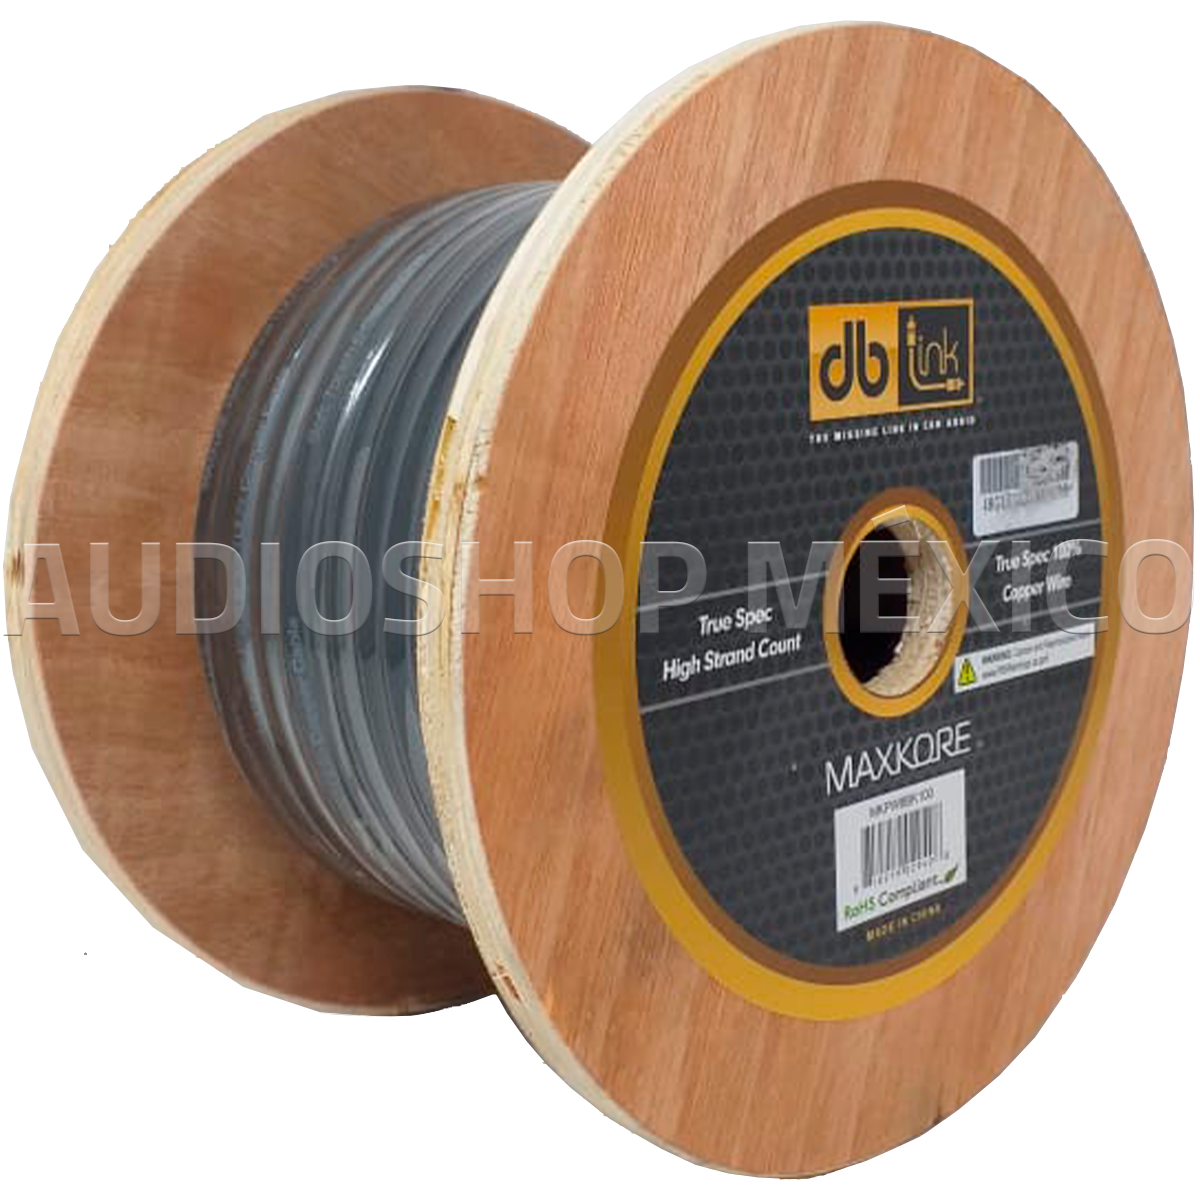 Rollo de Cable Profesional Calibre 8 DB Link MKPW8BK100 100 pies 100% Cobre AWG Color Negro